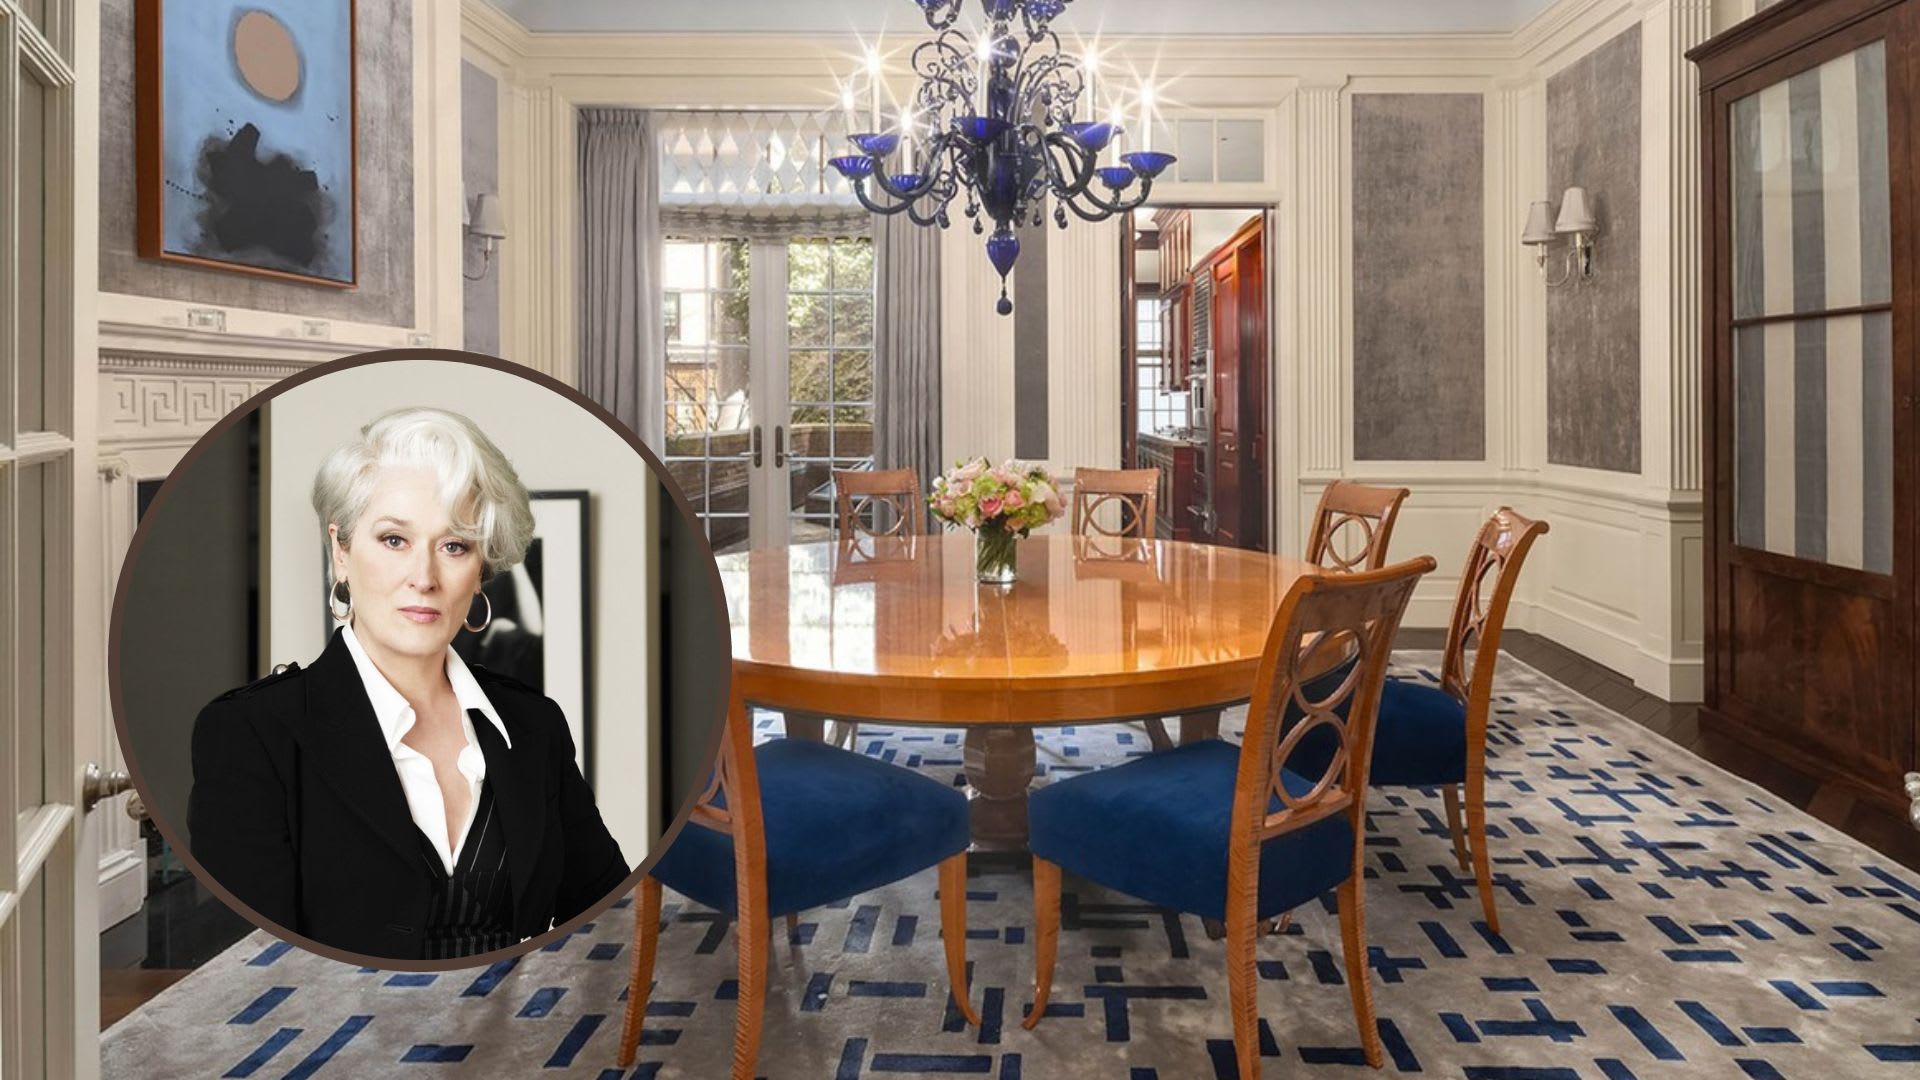 Luxusní dům ve filmu Ďábel nosí Pradu obývala Miranda Prestley v podání herečky Meryl Streep.